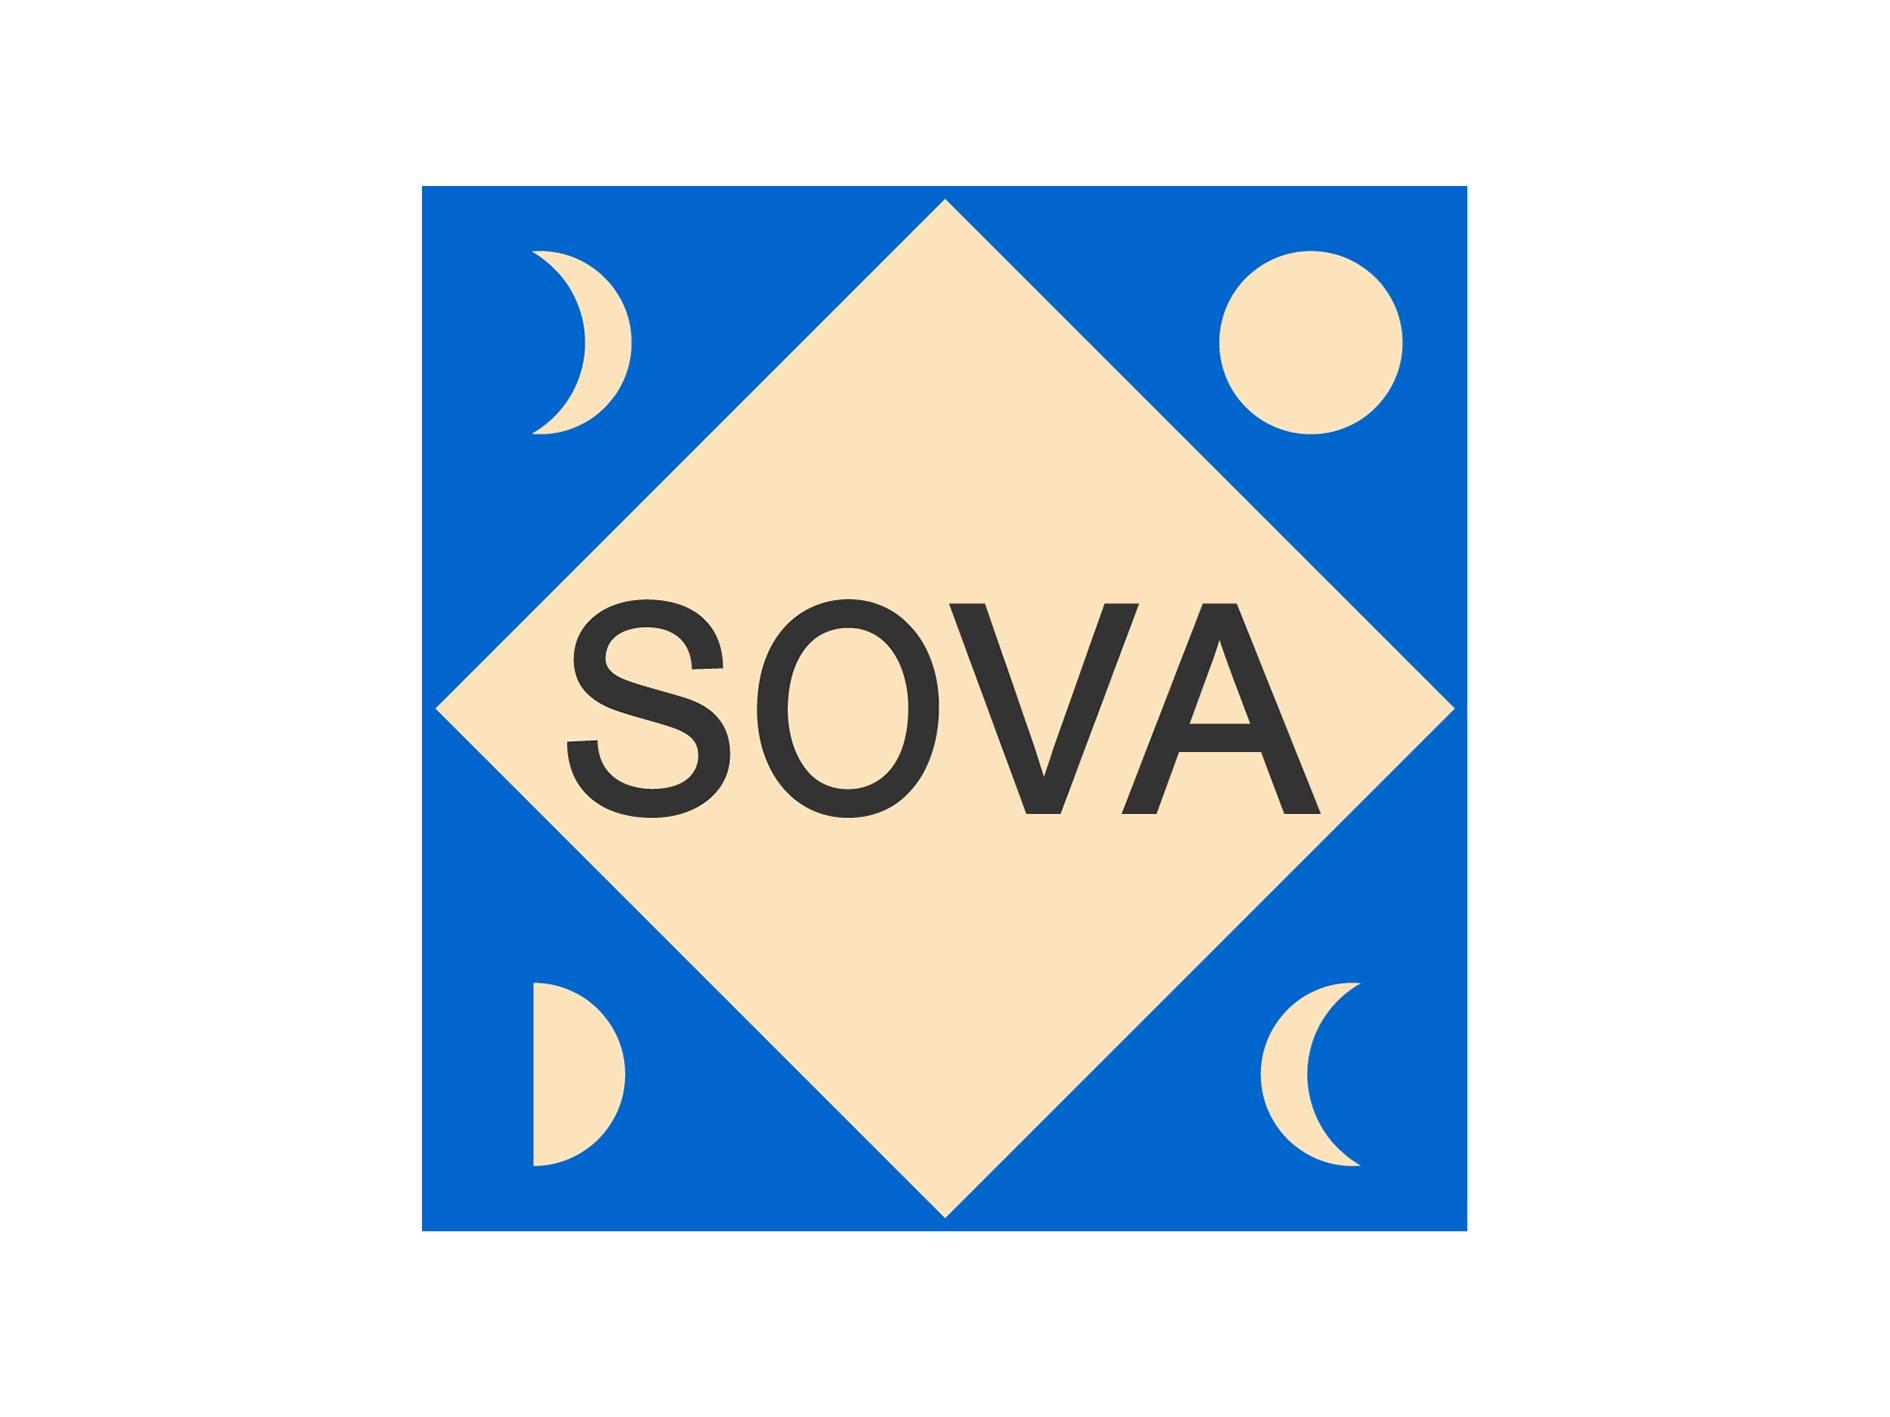 Logo of SOVA